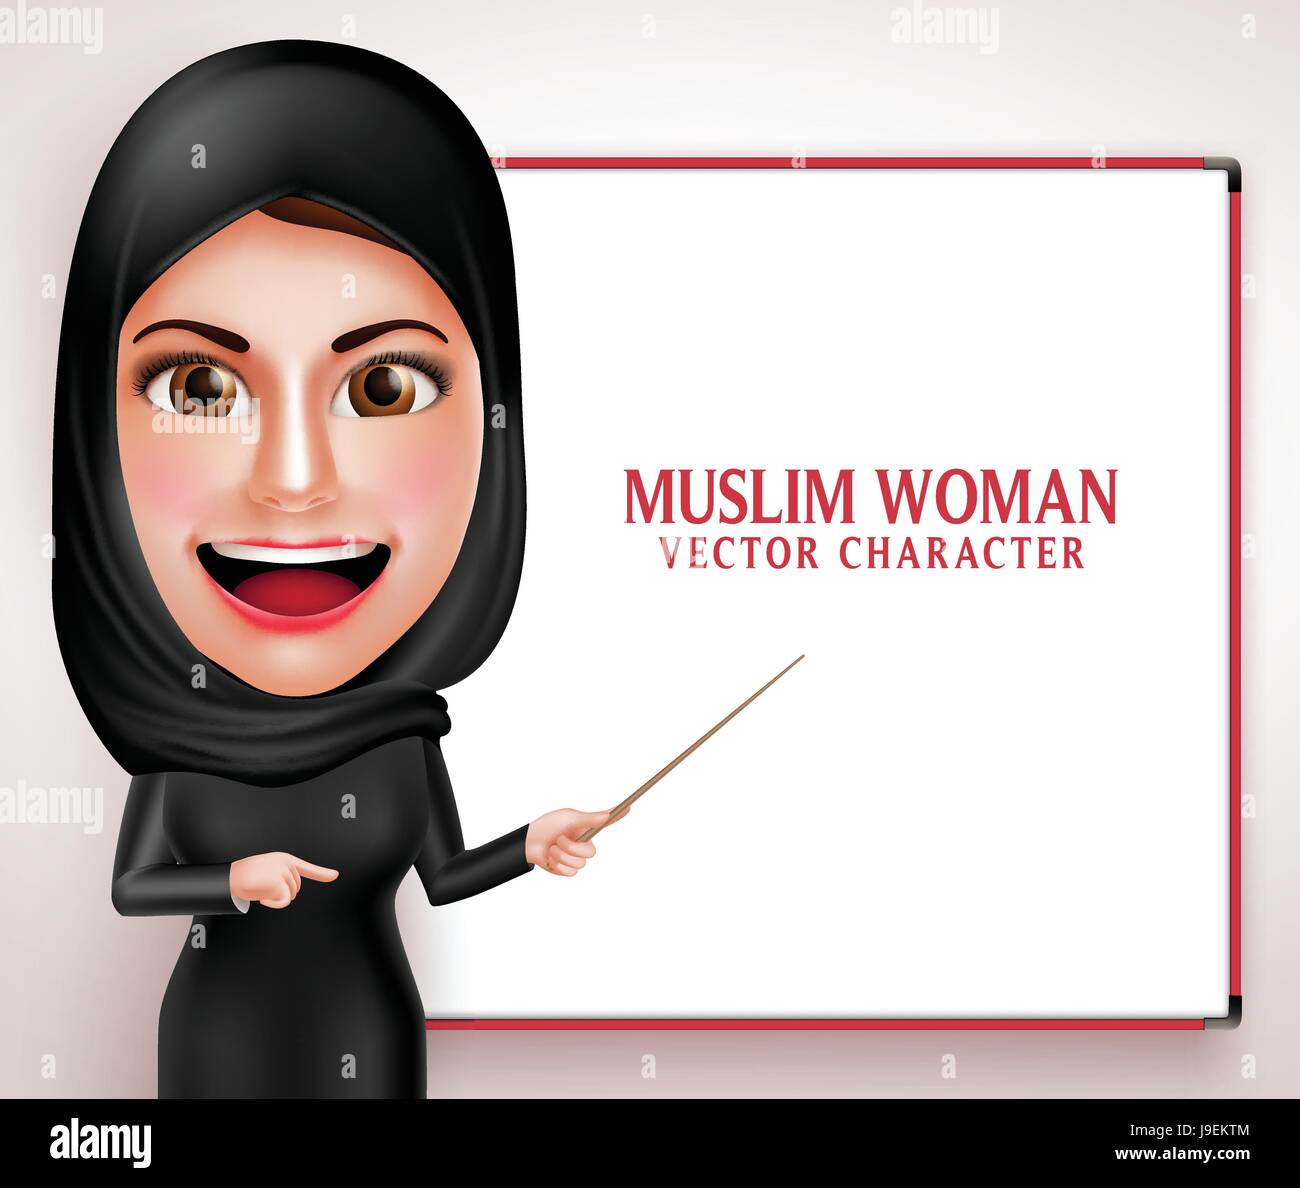 Muslimische Frau Vektor Charakter präsentieren oder Unterricht in weiße Tafel mit schönen Lächeln tragen Hijab und islamische Kleidung. Stock Vektor